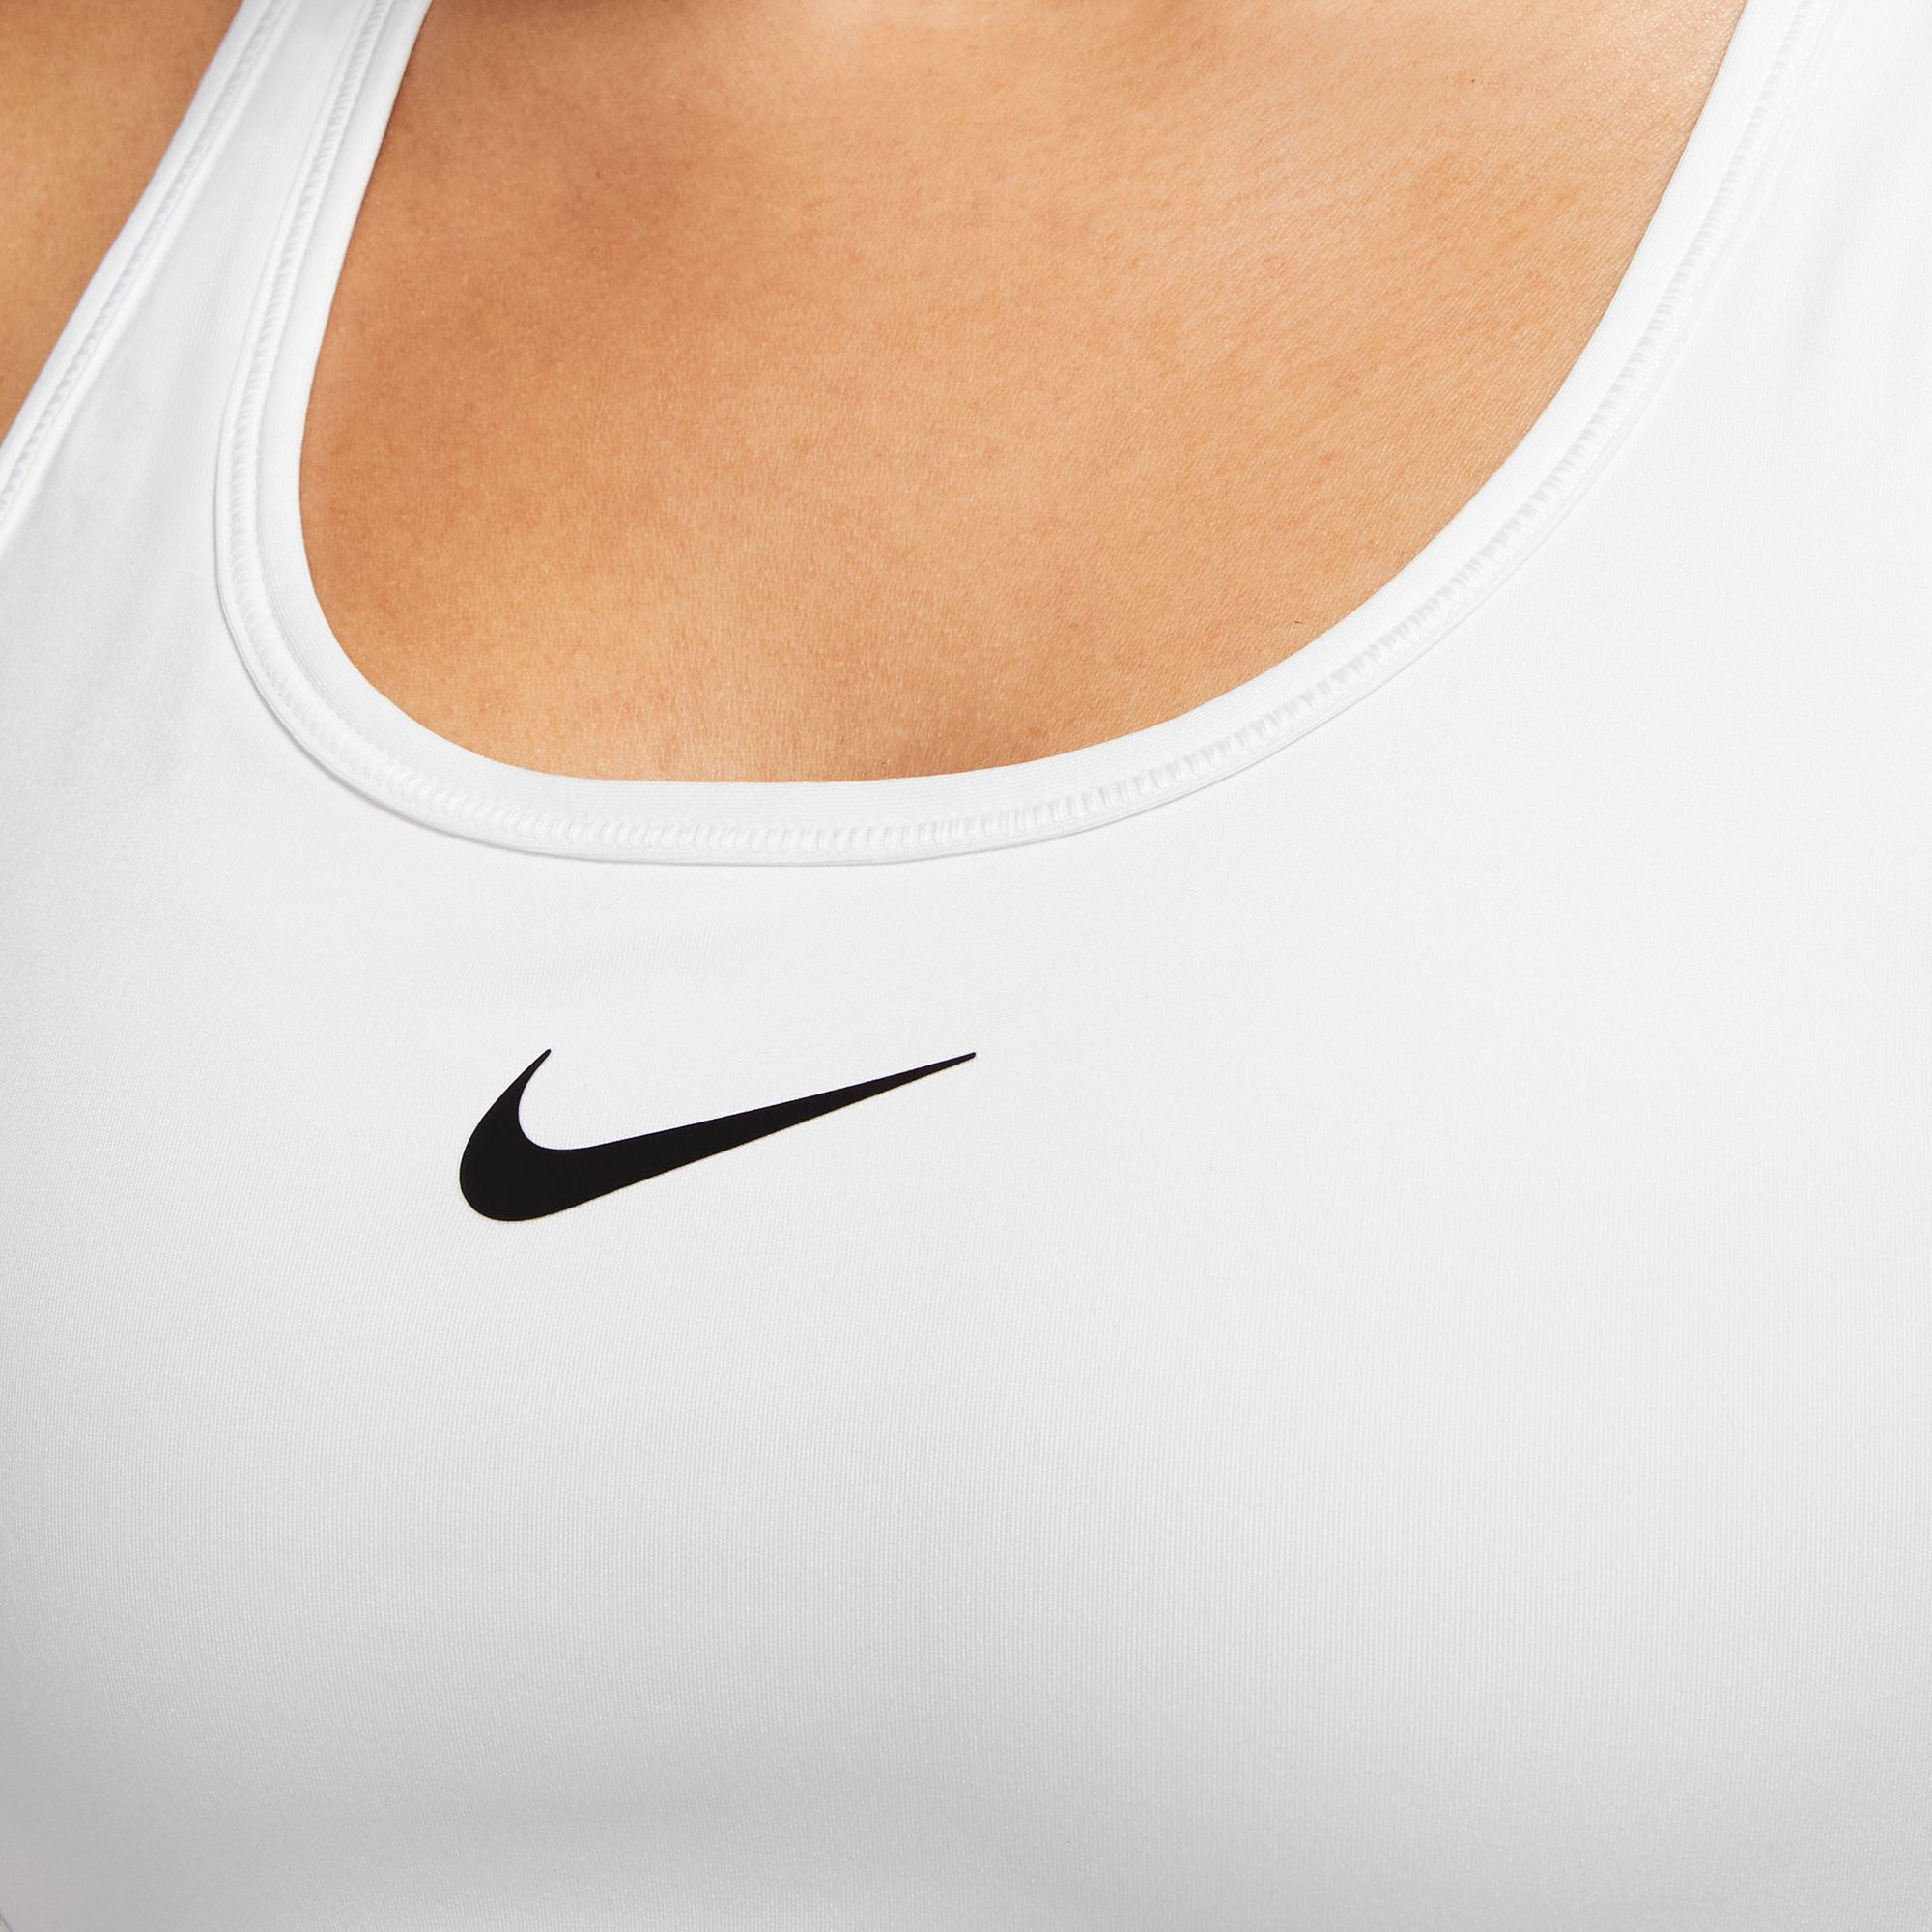 Nike Swoosh Women's Medium-Support 1-Piece Pad Sports Bra Gray Black size L  XL